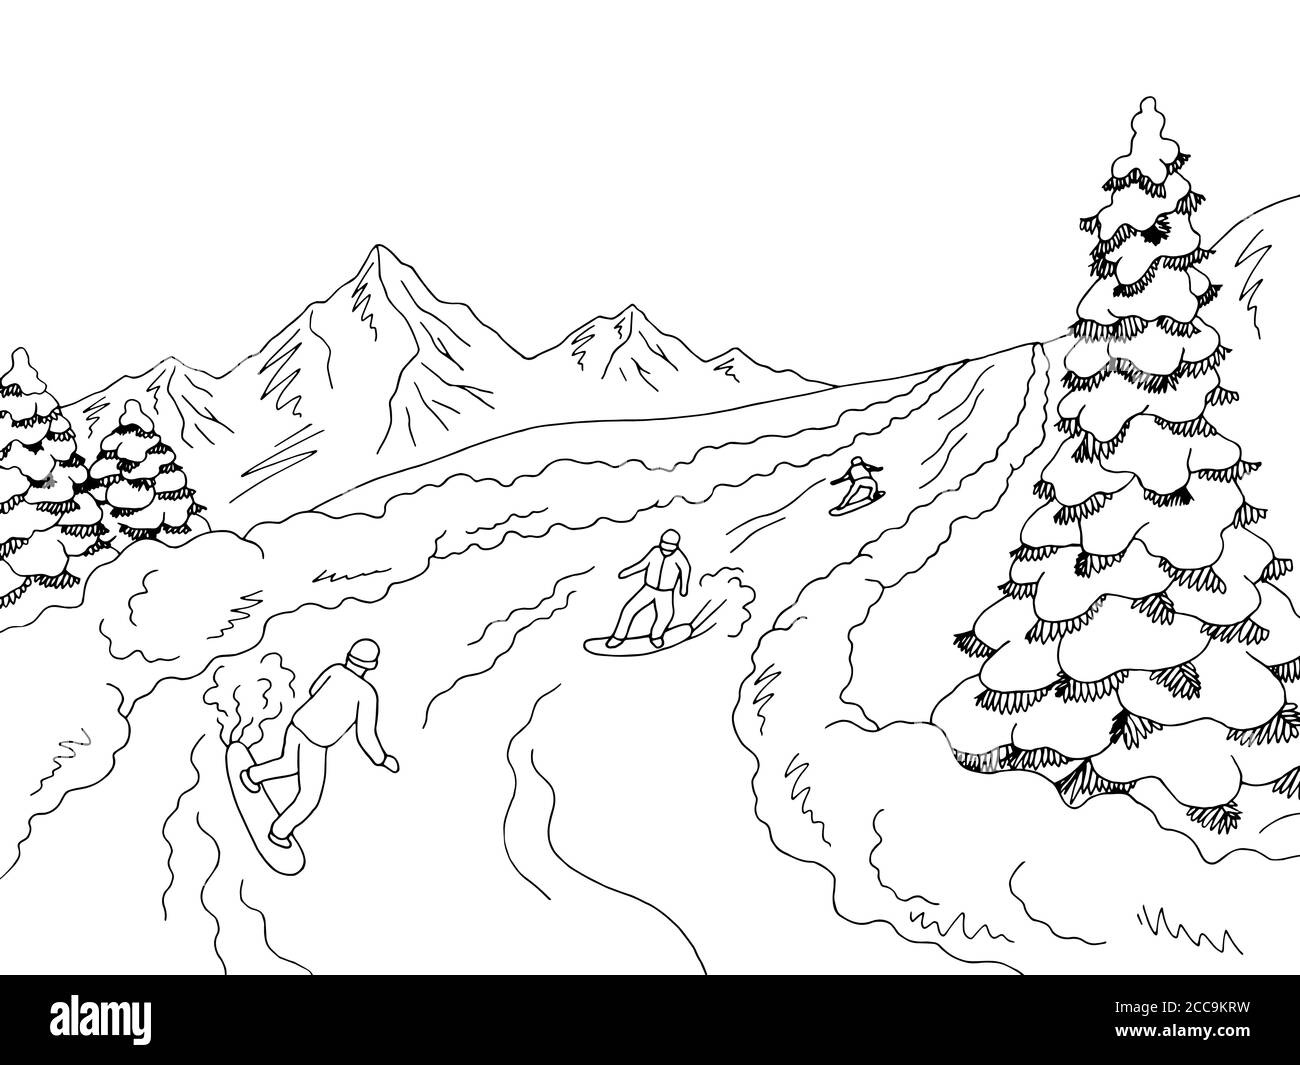 Les gens qui voyagent en snowboard à la montagne graphique noir blanc vecteur d'illustration d'esquisse paysage Illustration de Vecteur